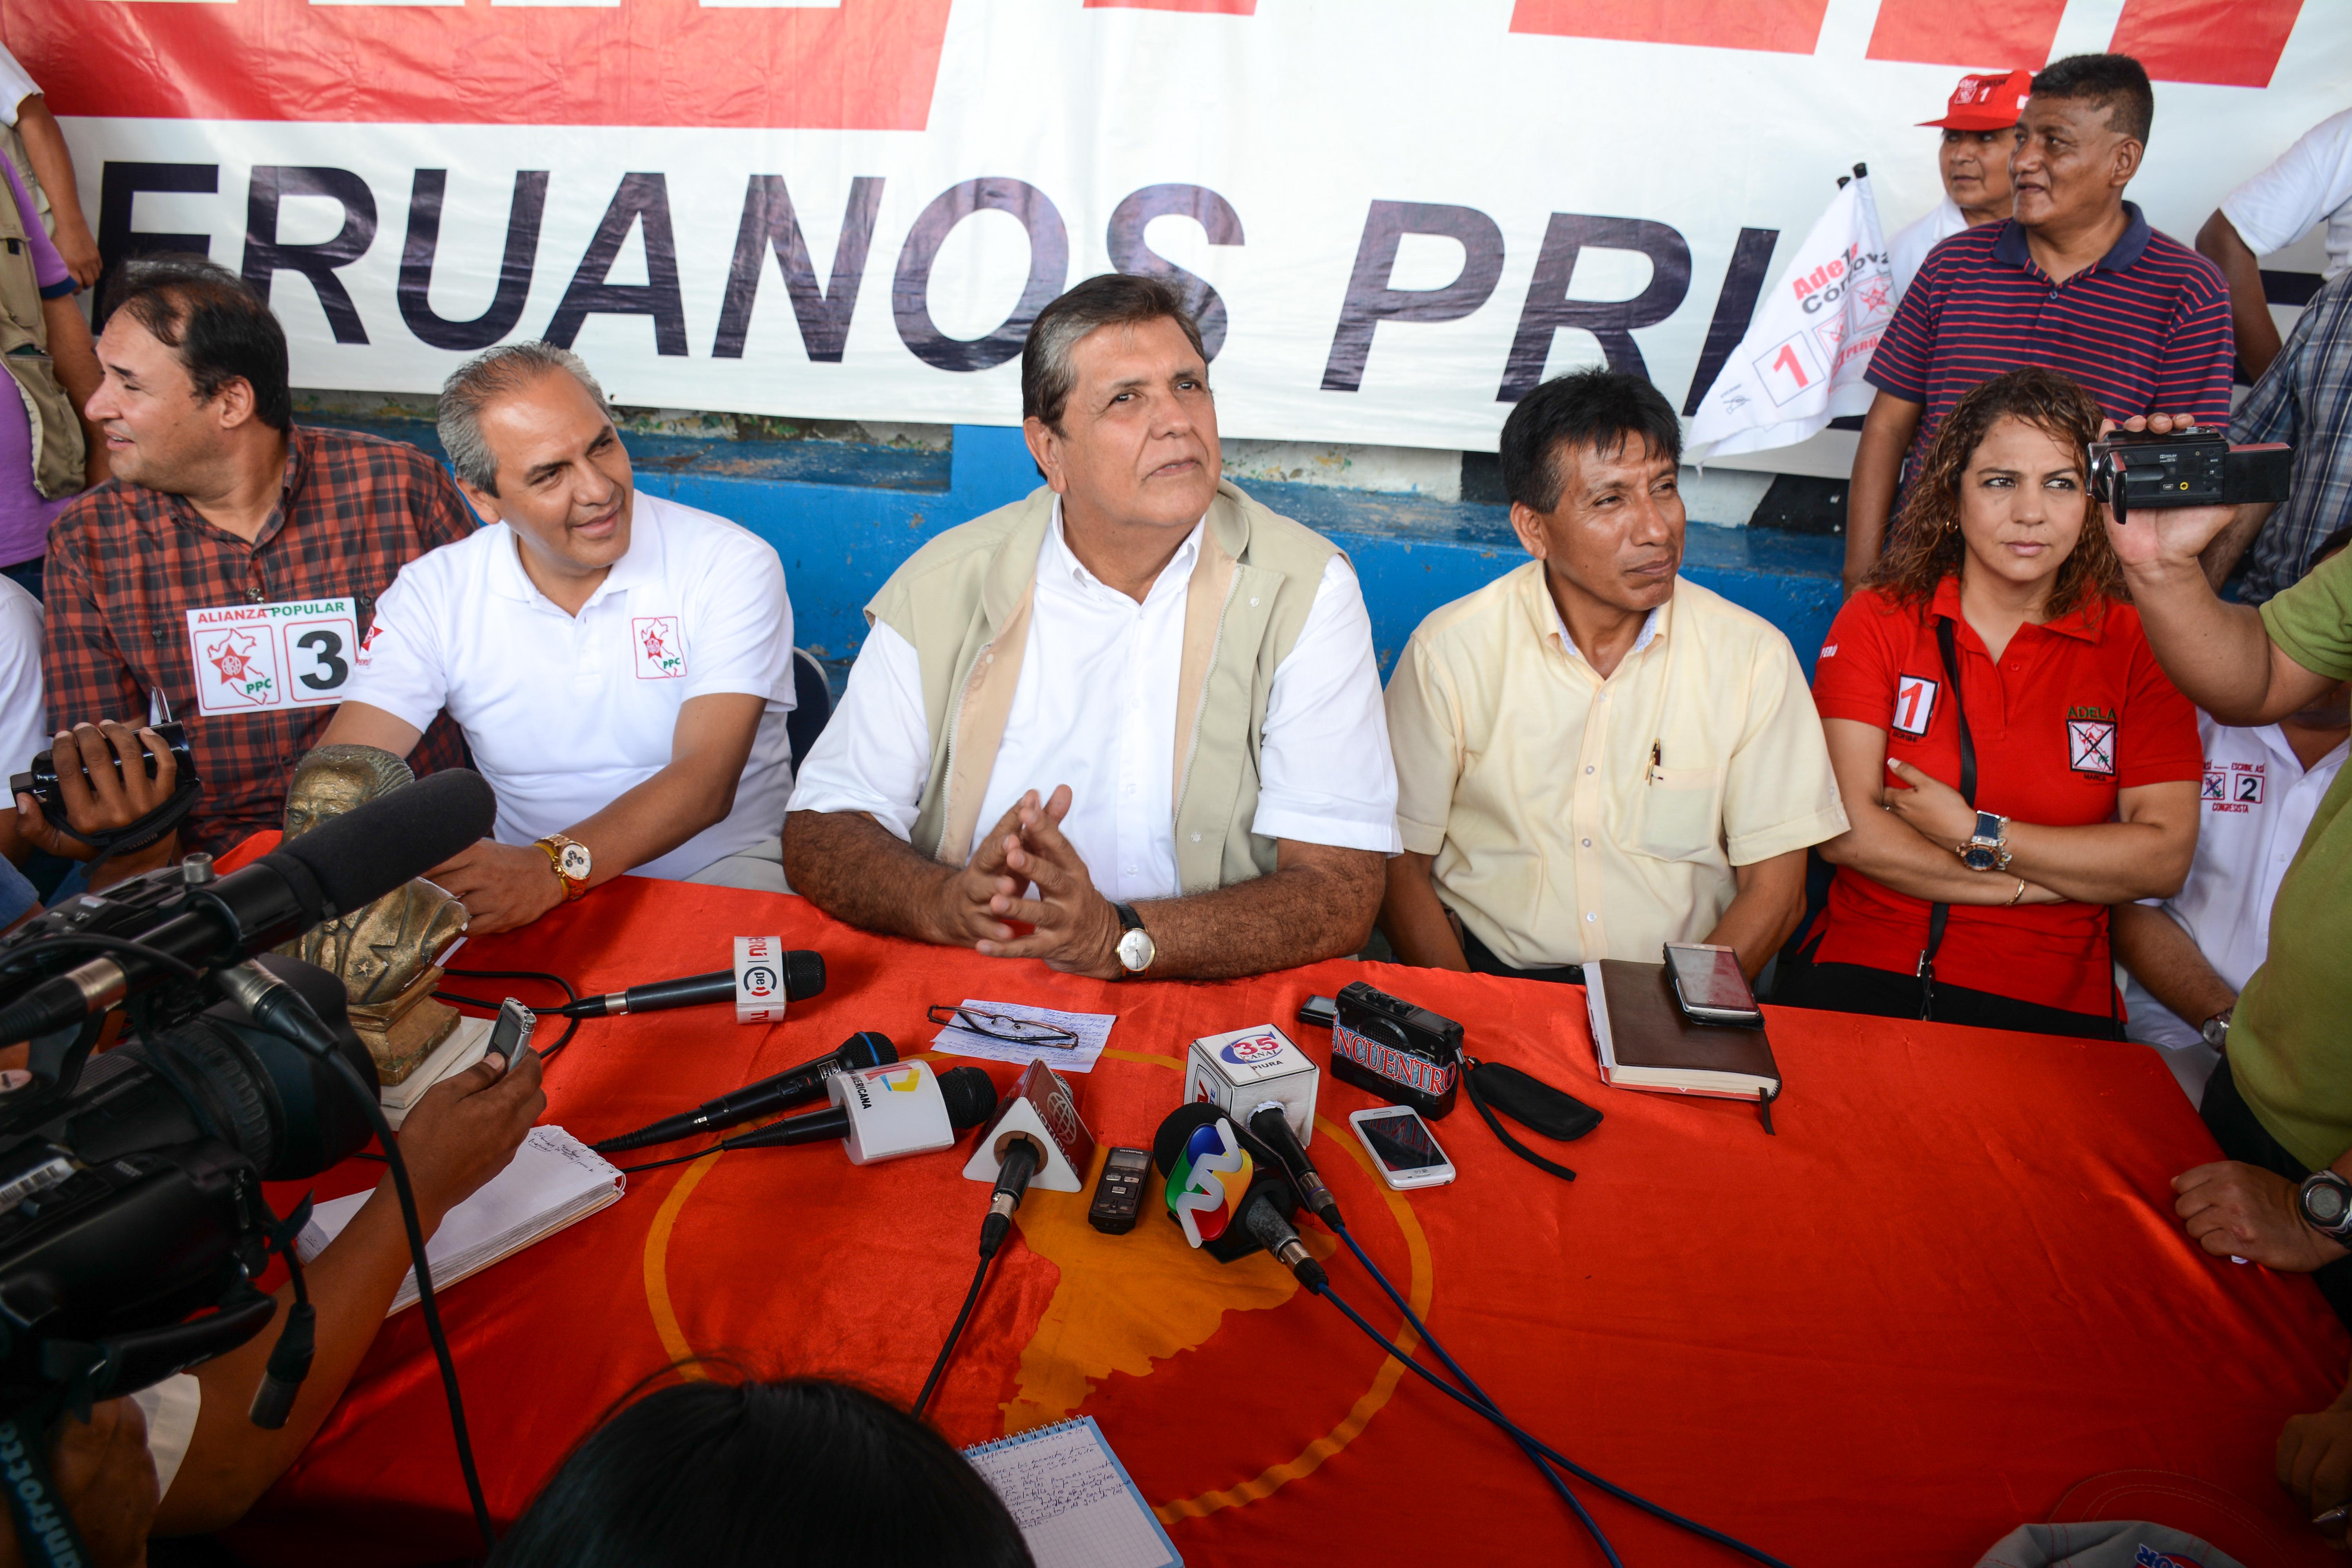 El líder aprista estuvo acompañado de los candidatos regionales al congreso por Alianza Popular. Foto: WALAC / Gonzalo Varillas